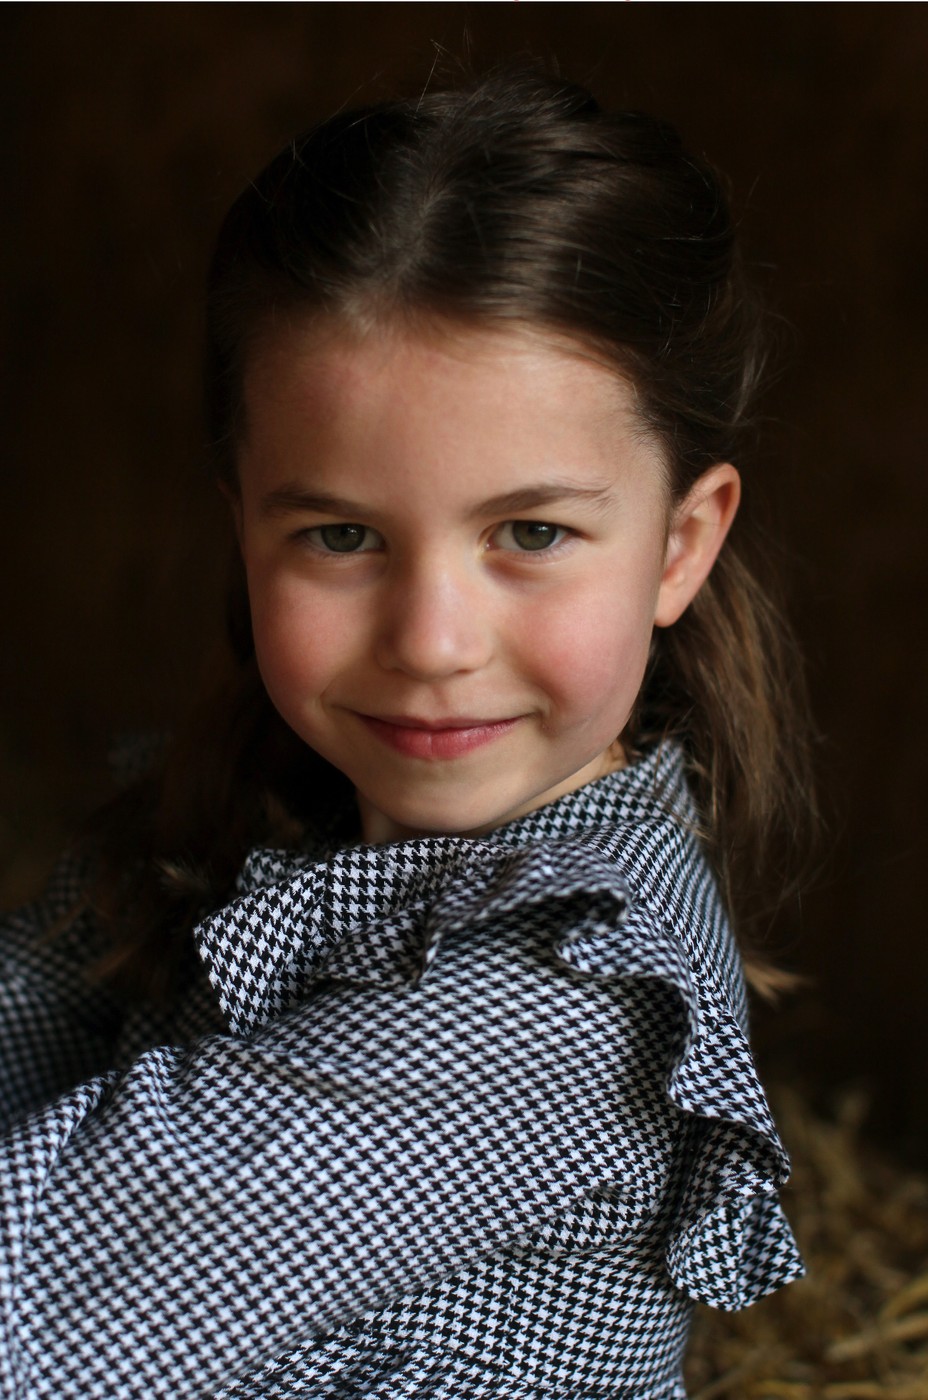 Az 5 éves Sarolta hercegnő